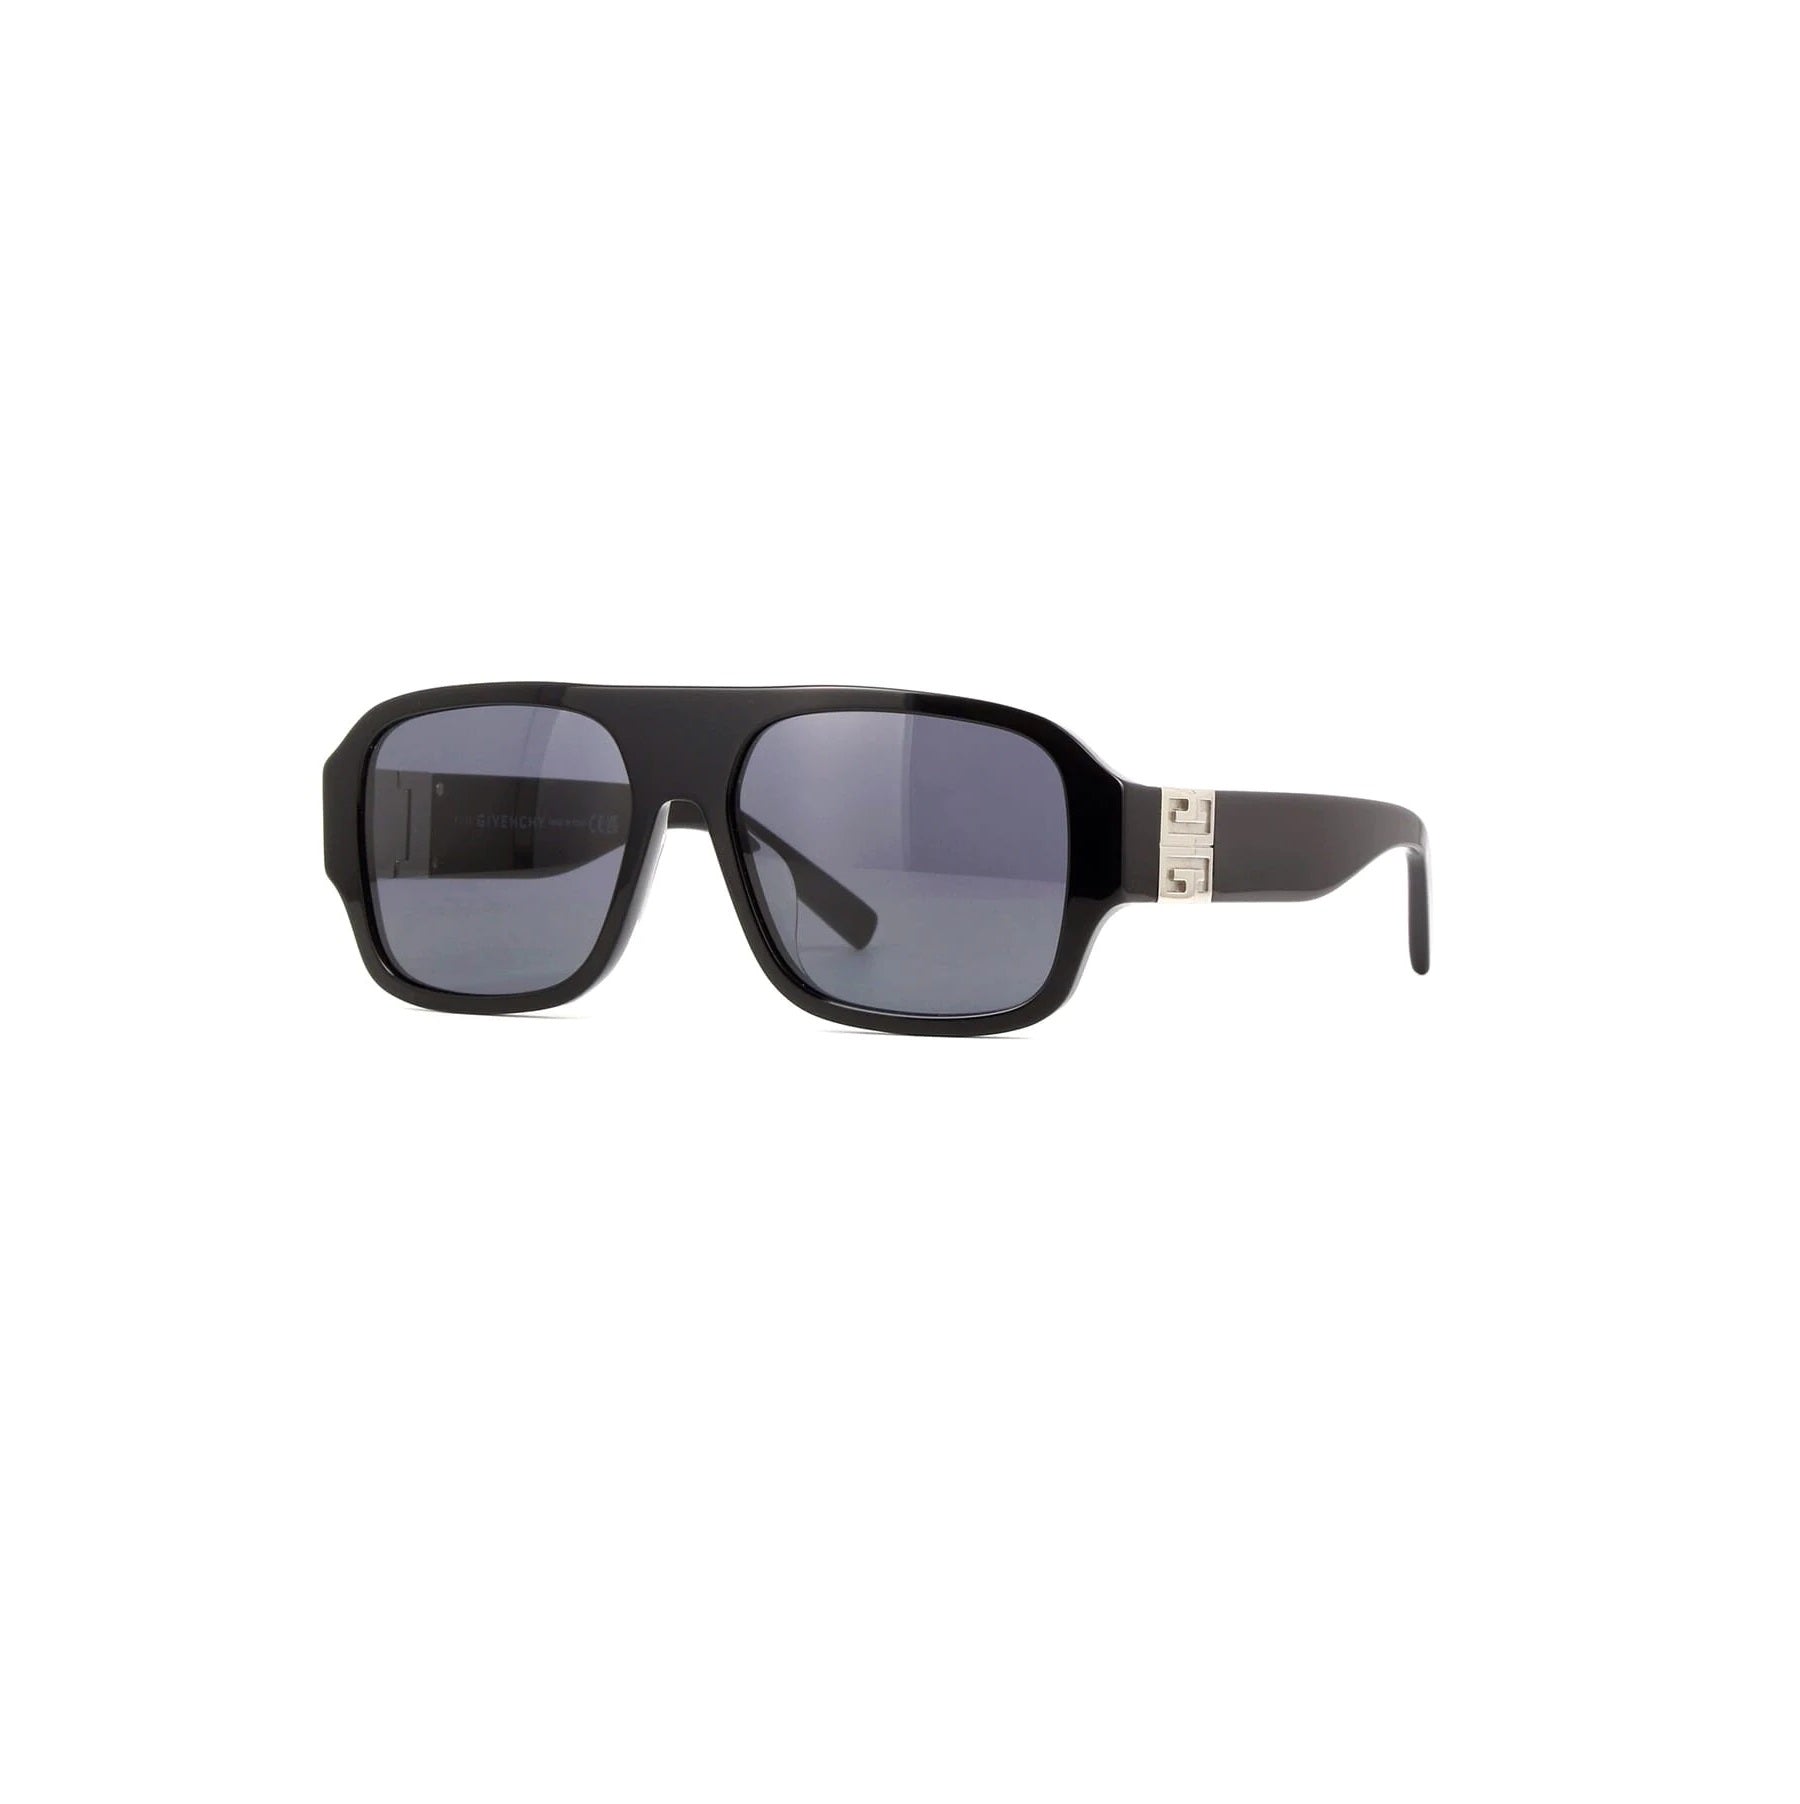 THELIOS Givenchy Aviator Sunglasses with Smoke Lens in Shiny Black – MARAIS